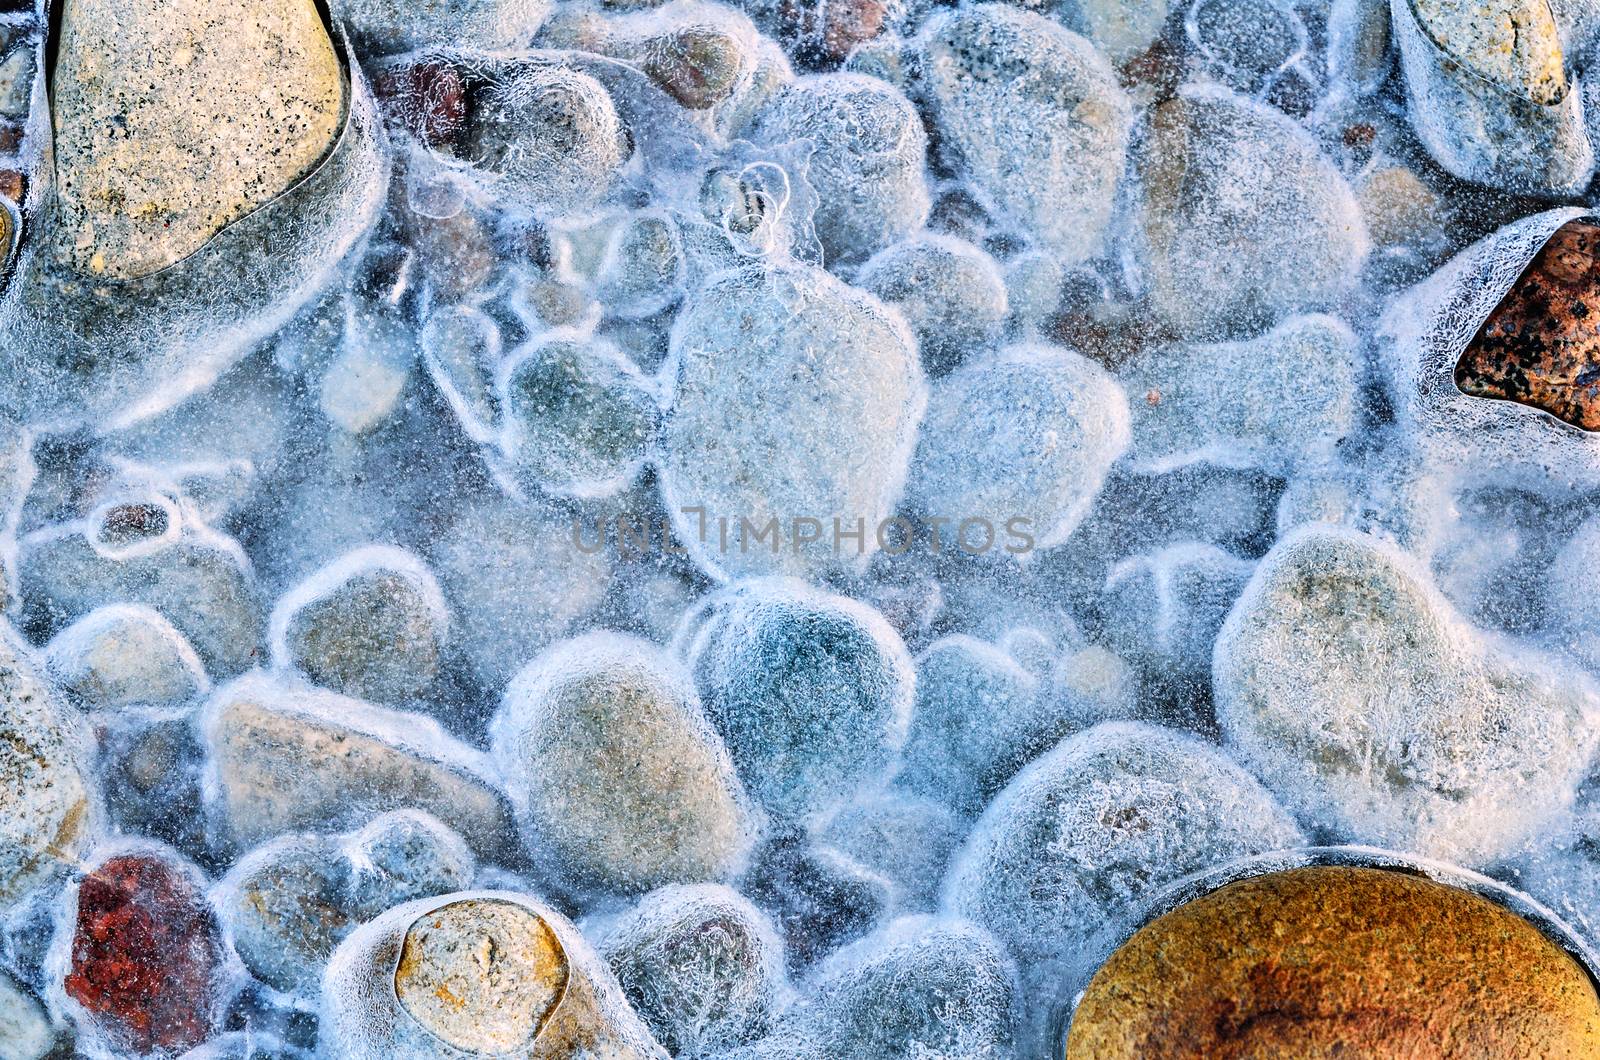 Frozen pebbles by styf22